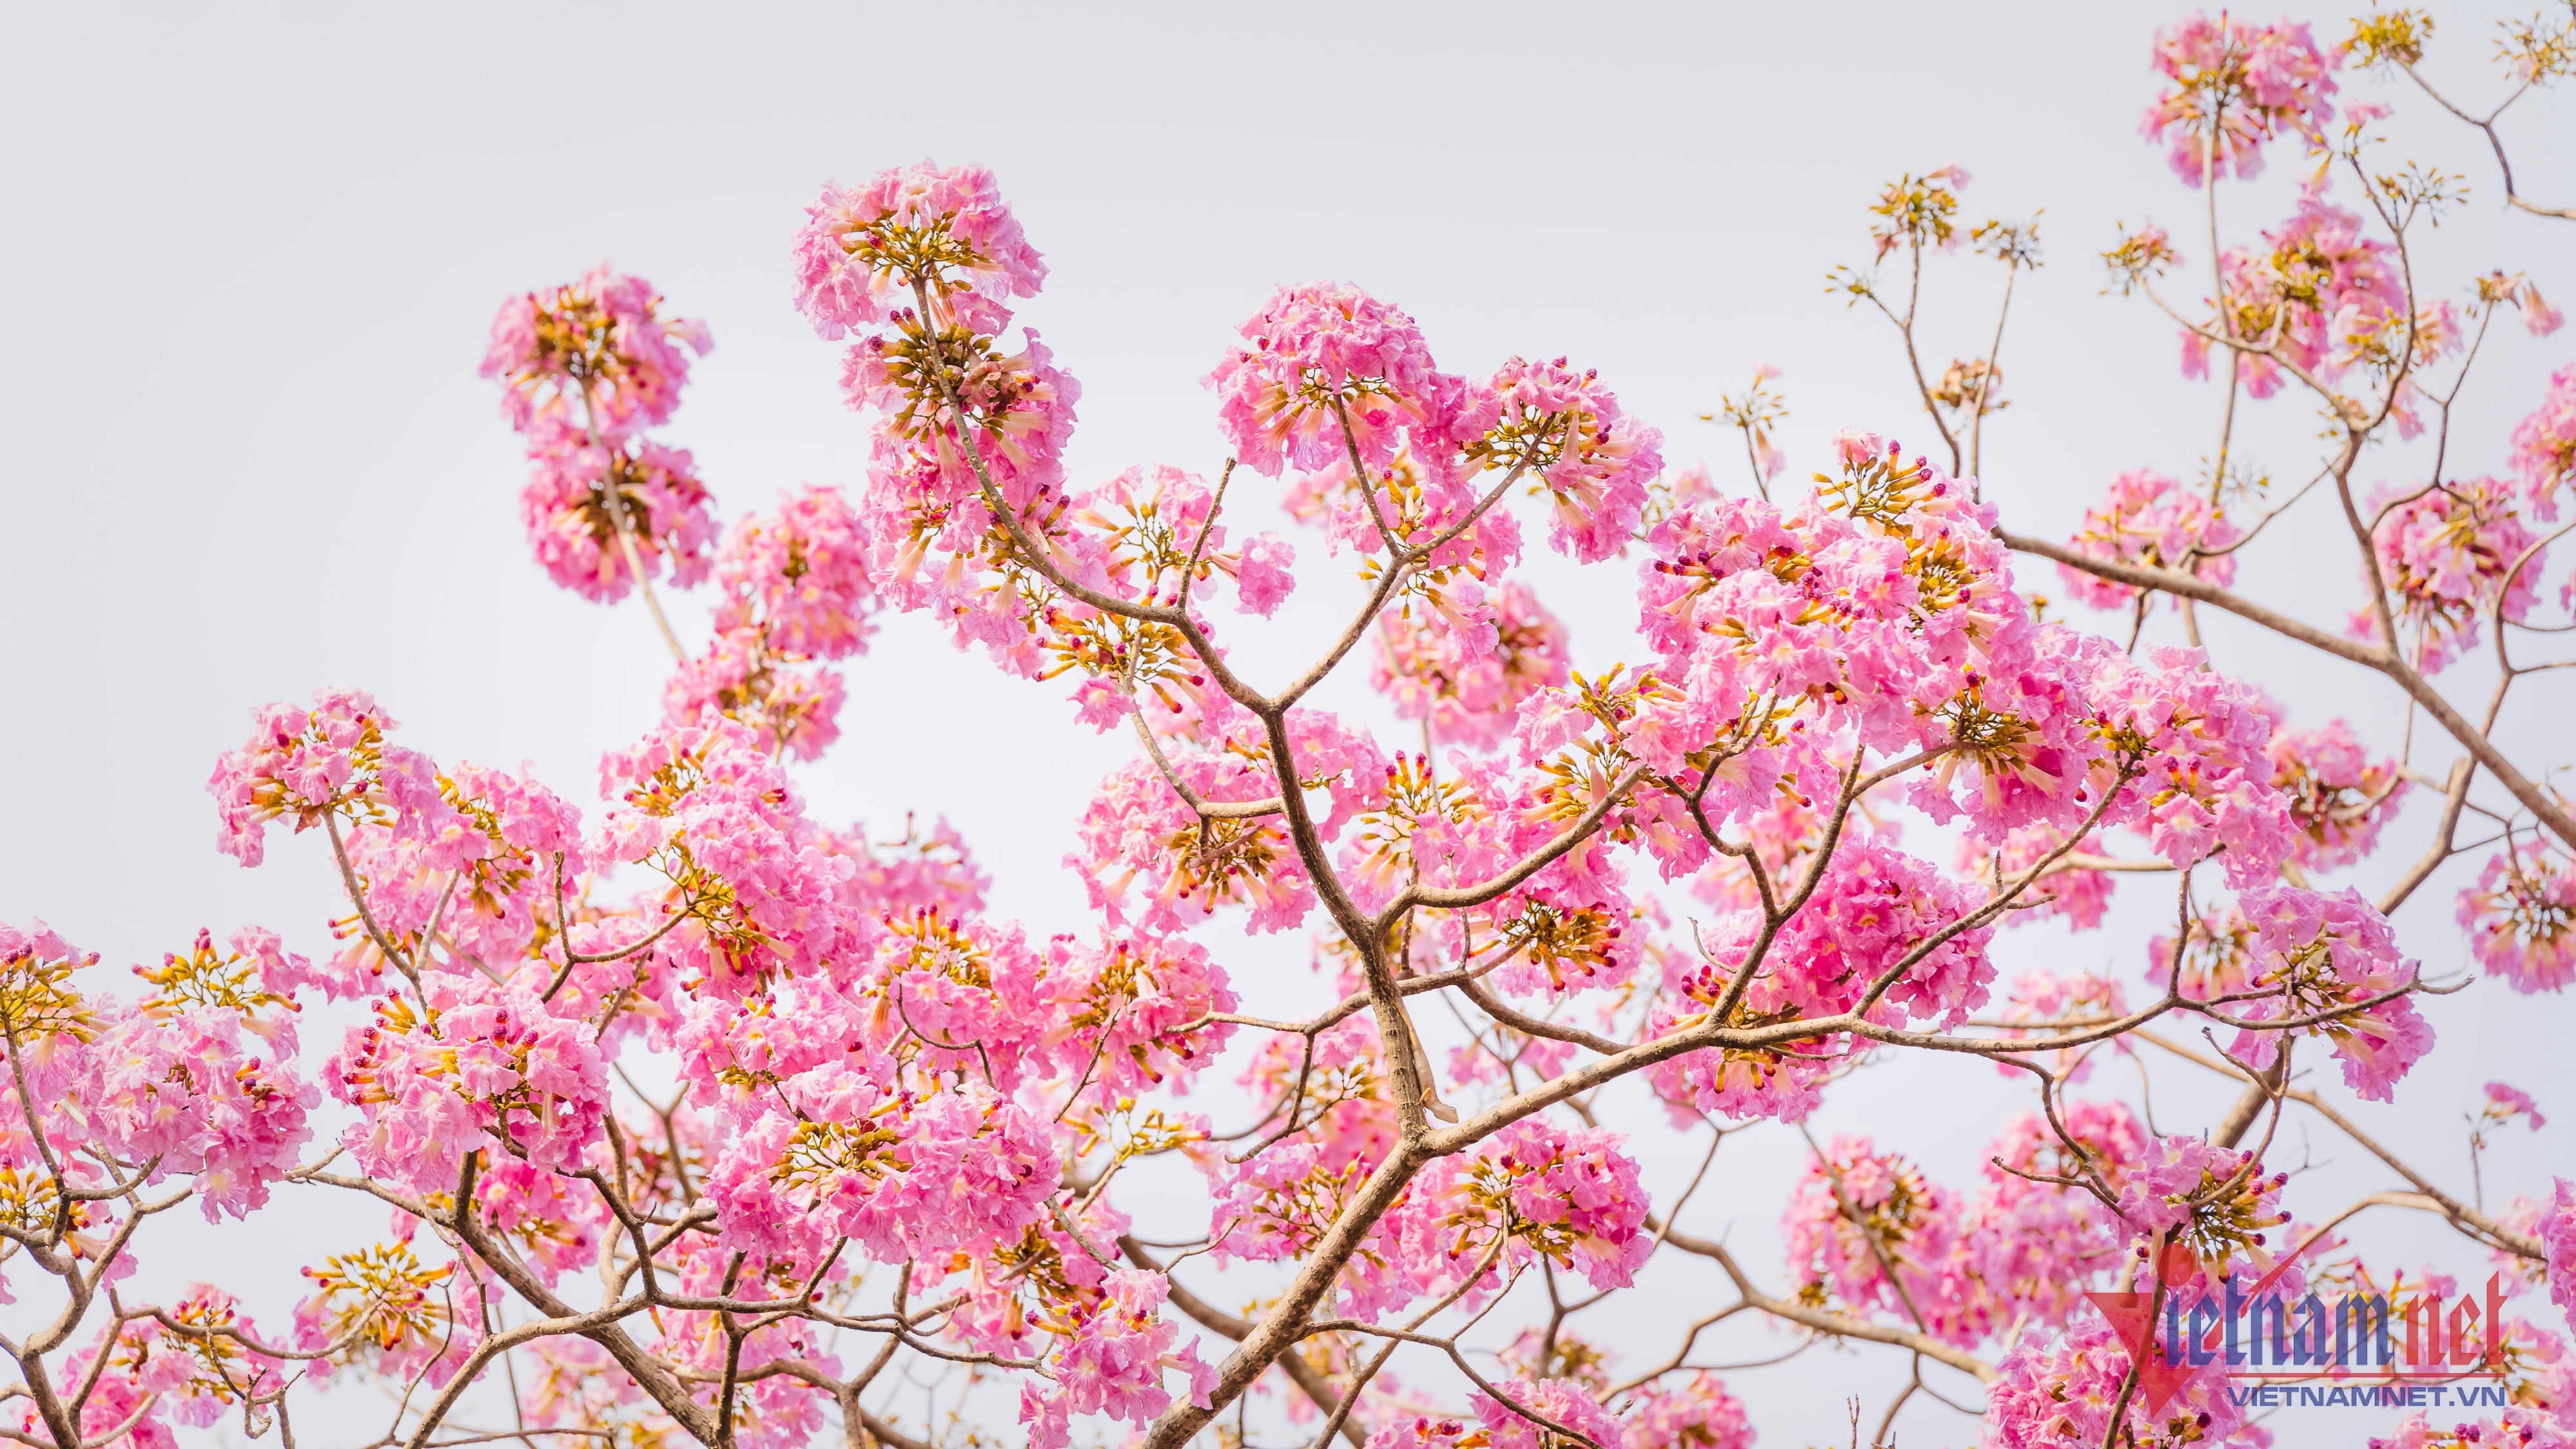 Đường hoa kèn hồng ở Đồng Nai bung nở rực rỡ đẹp như phố Nhật thu nhỏ   